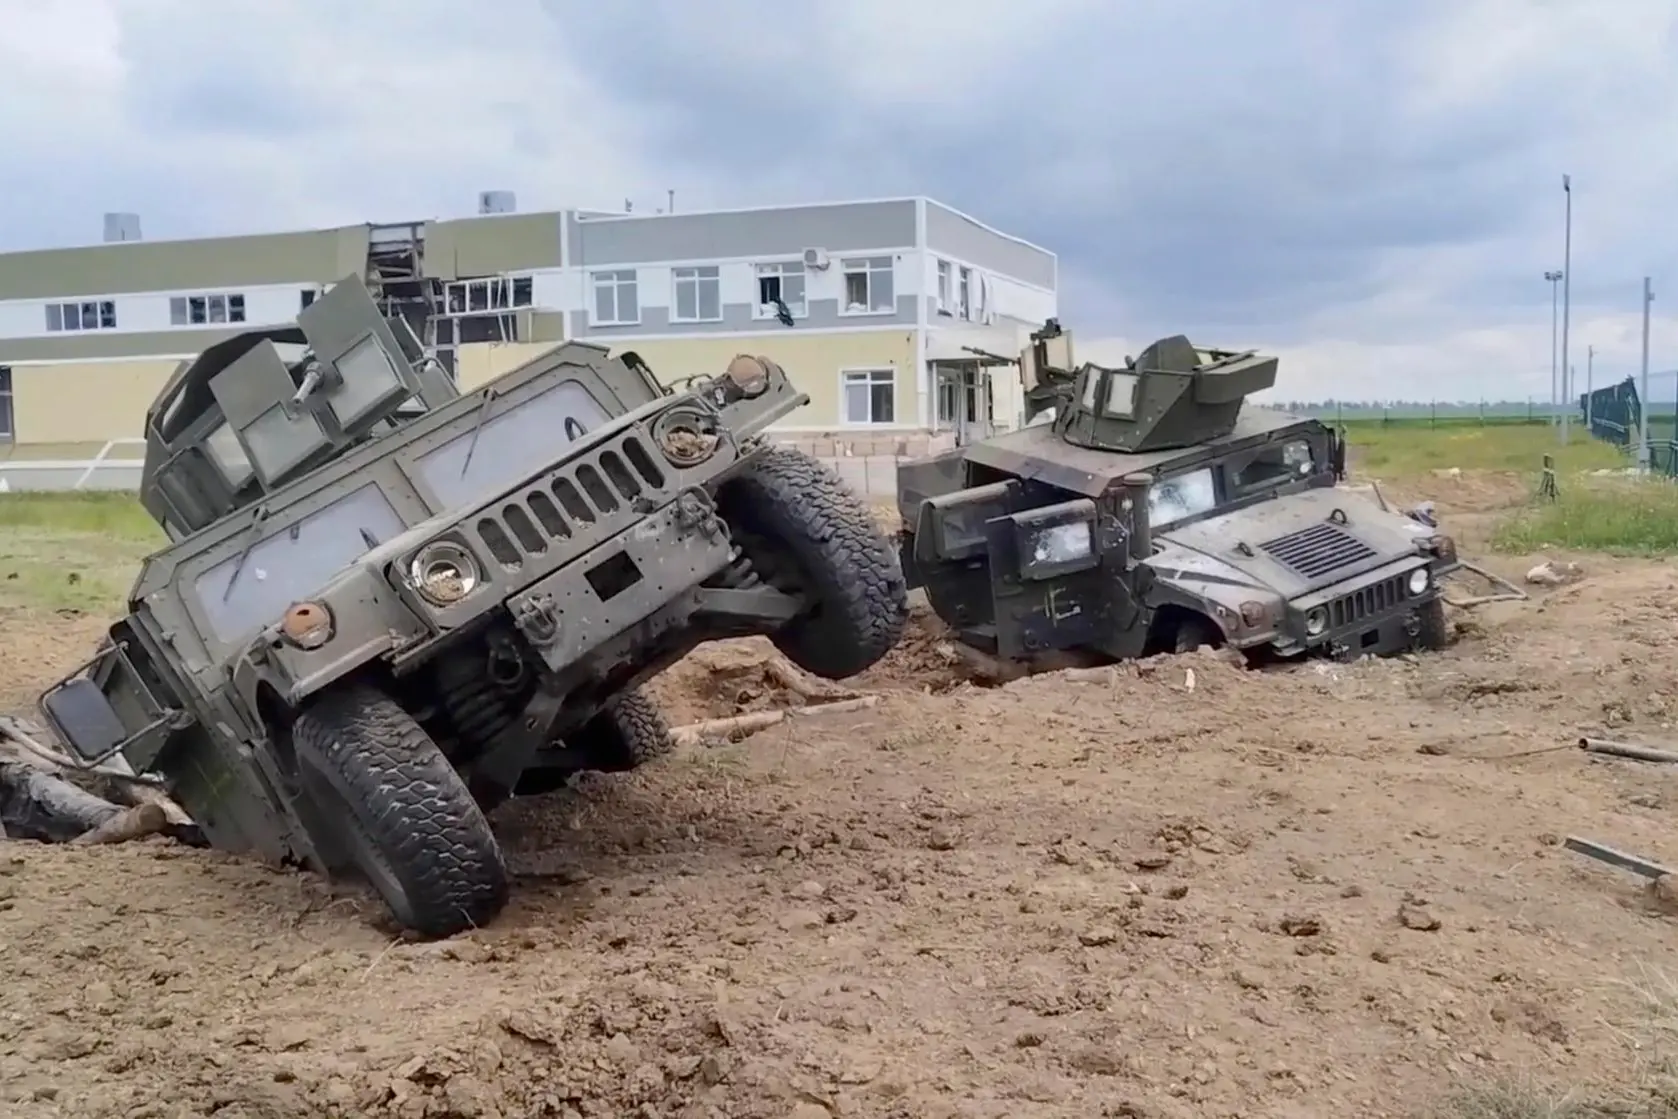 Mezzi militari distrutti nella regione russa di Belgorod (Ansa)